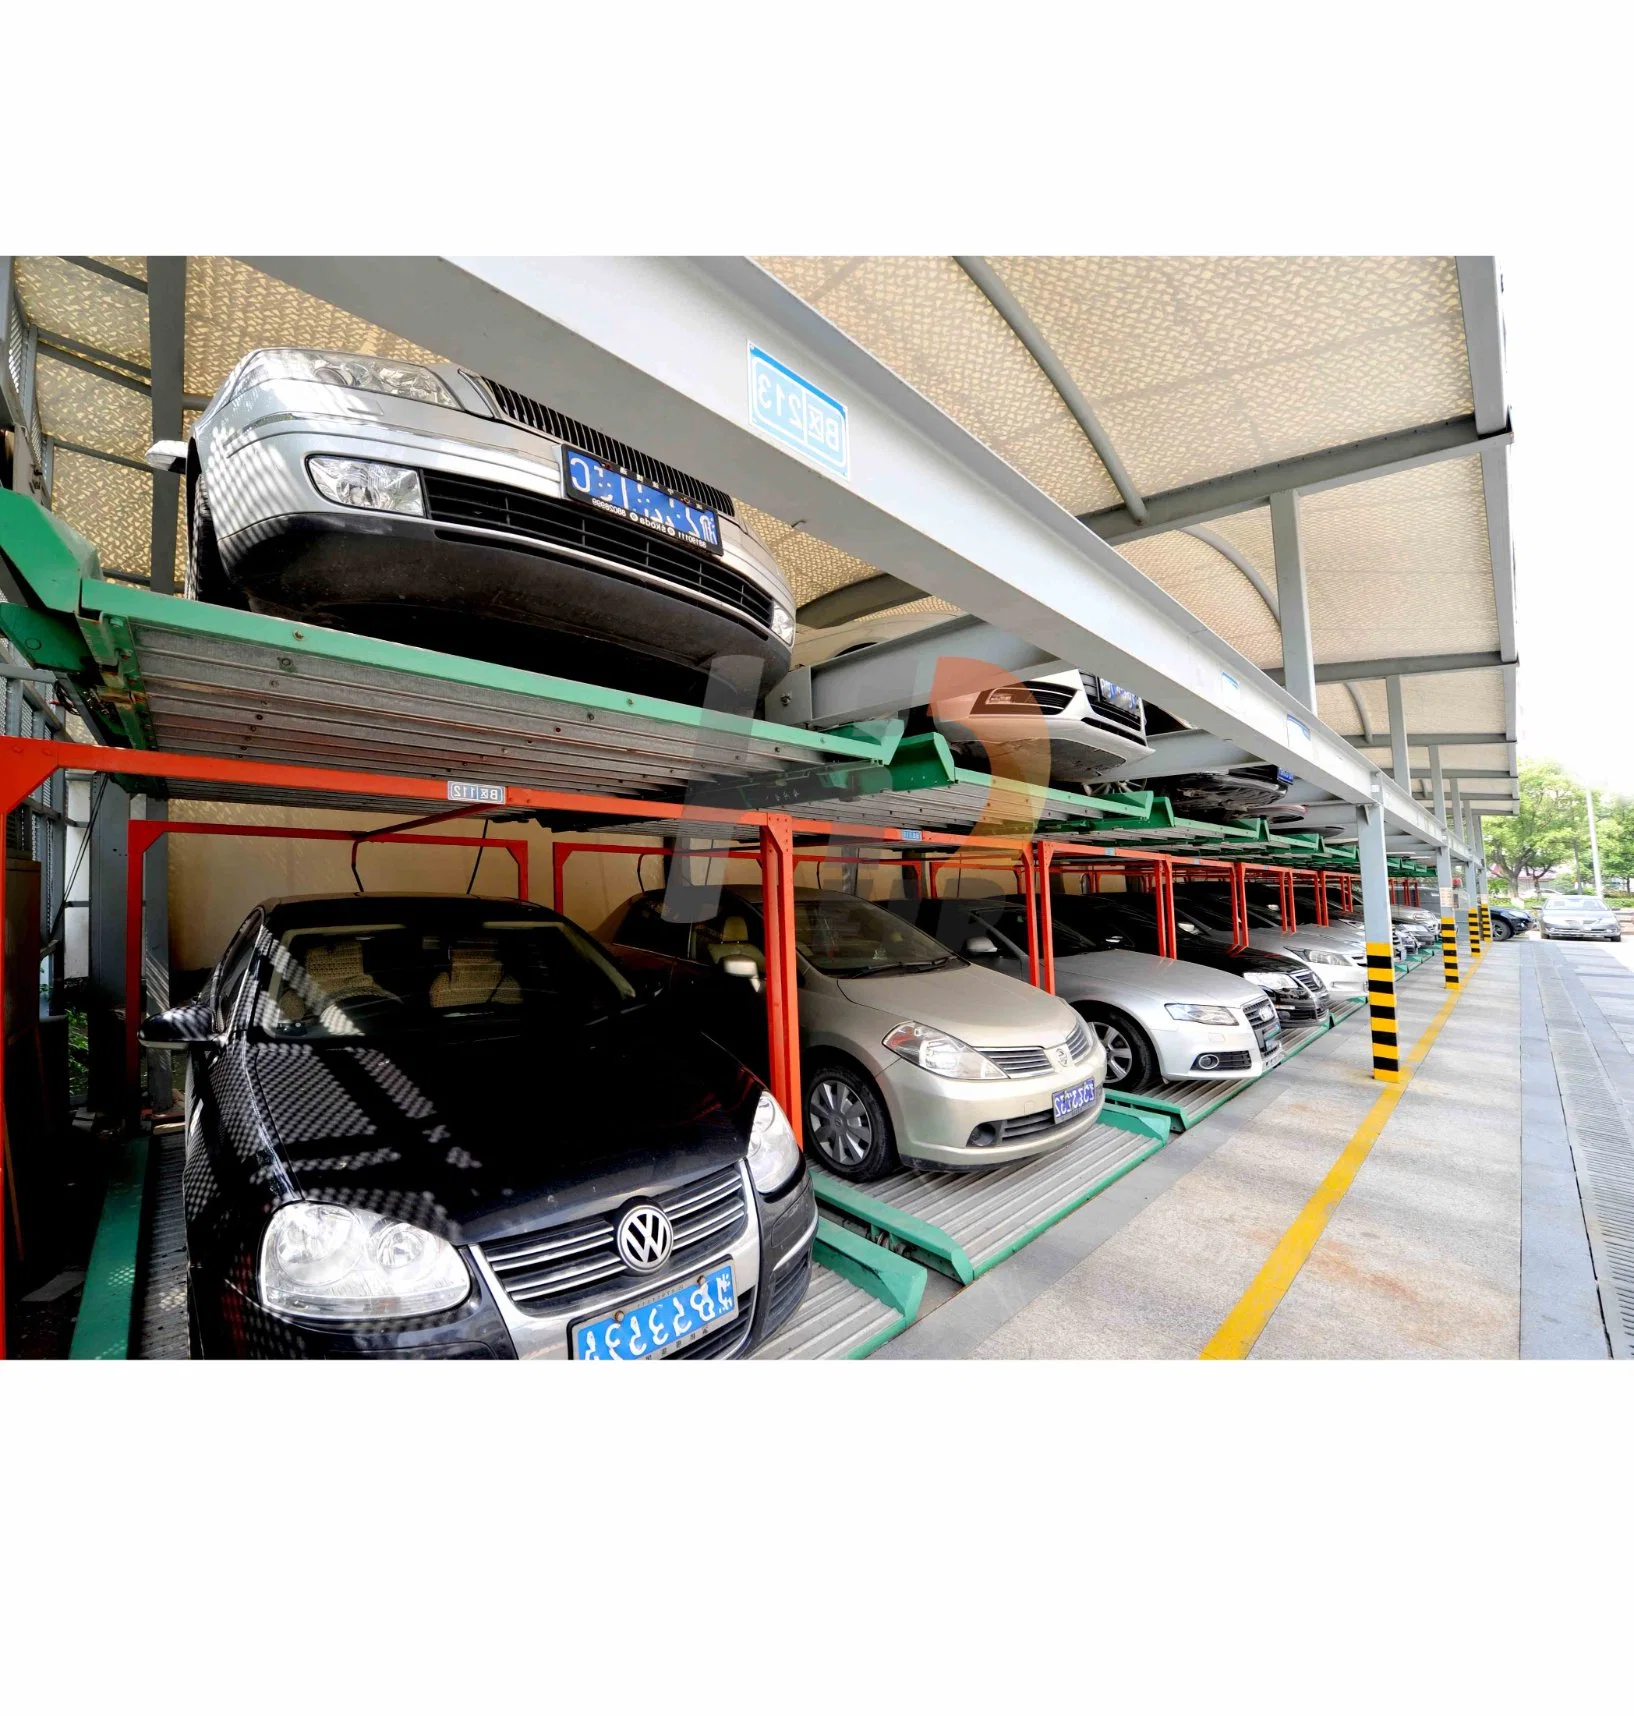 Solução de estacionamento e sistema de estacionamento de segurança mecânica Puzzle de dupla camada Equipamento Puzzle sistema mecânico de Estacionamento de carros e armazenamento de veículos Estacionamento Lote